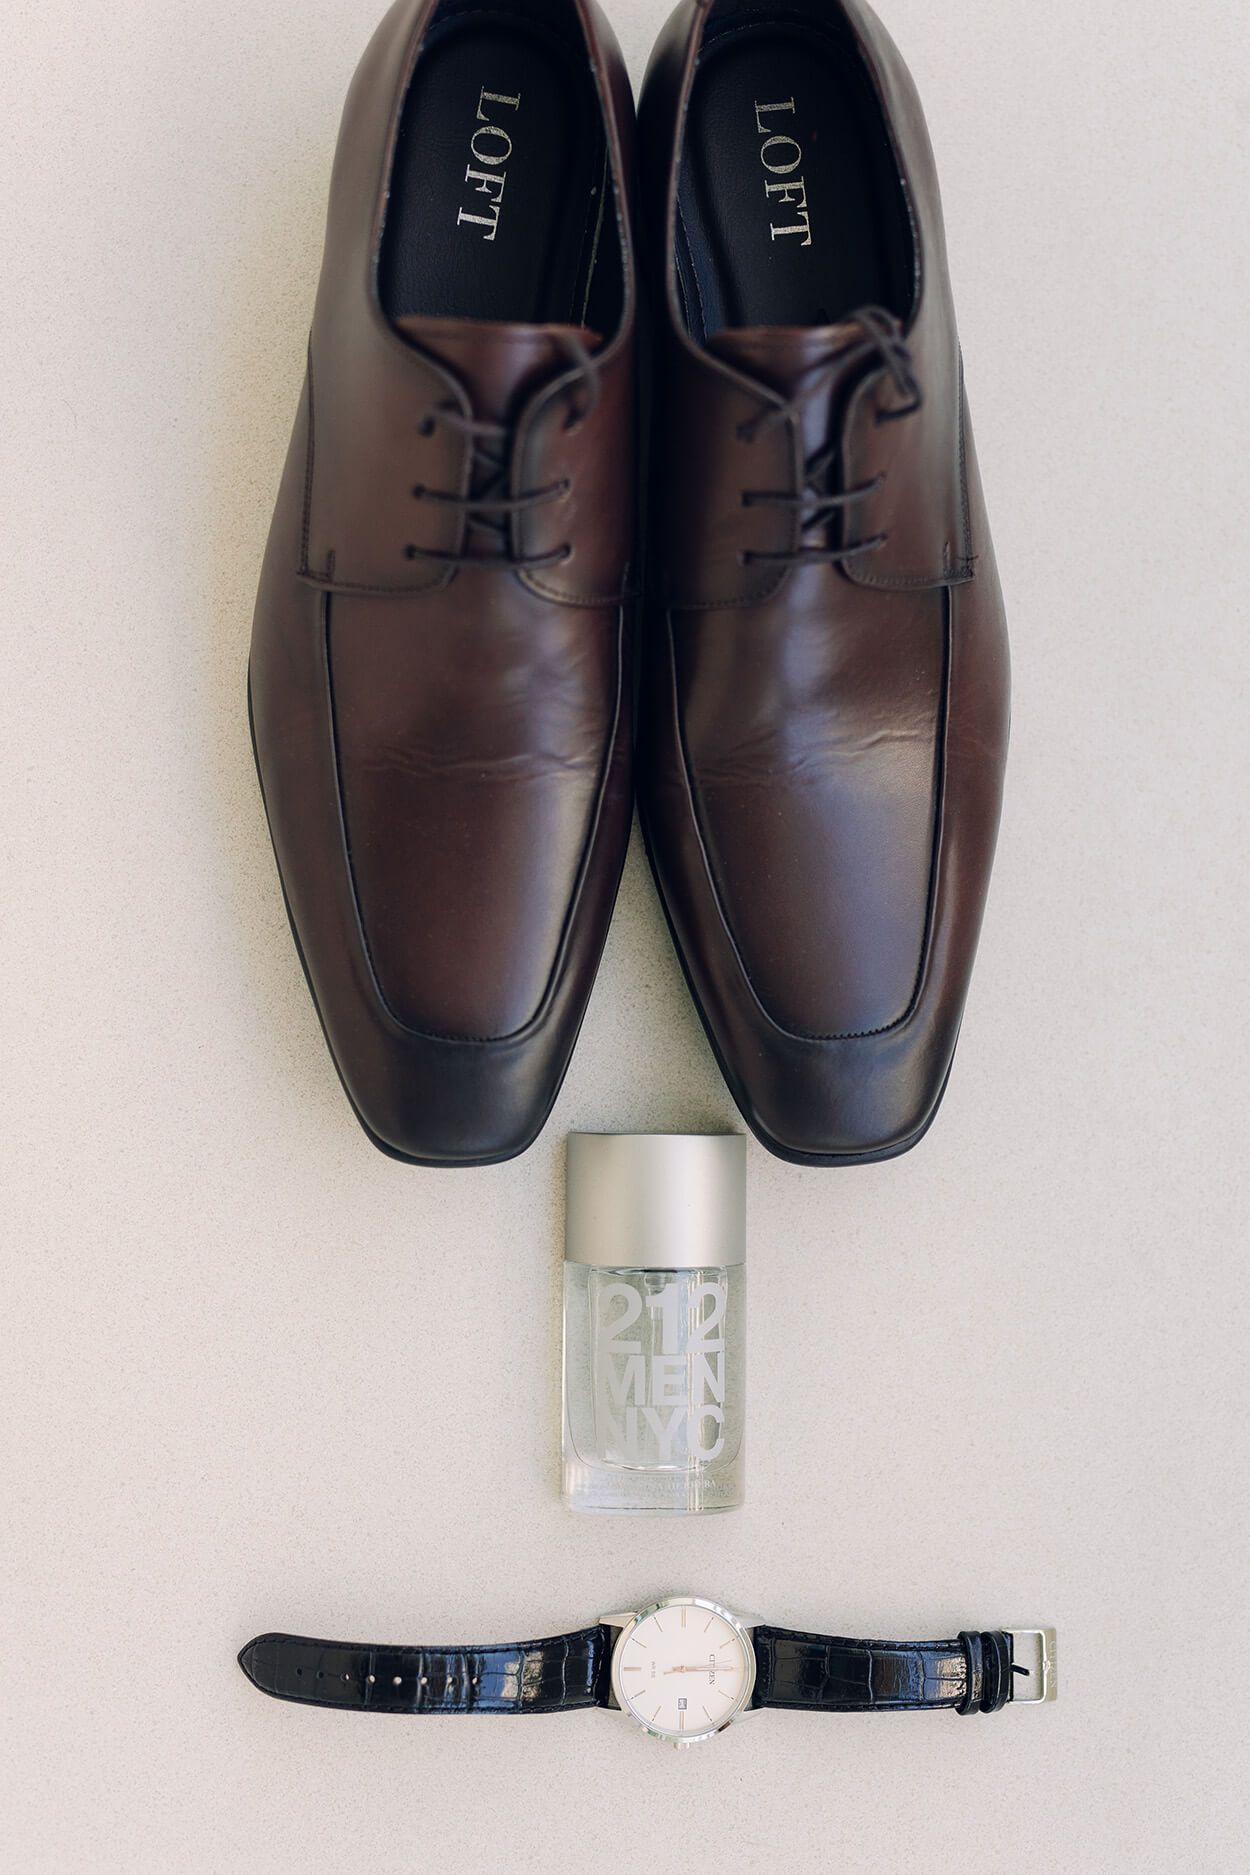 sapato masculino marrom e perfume